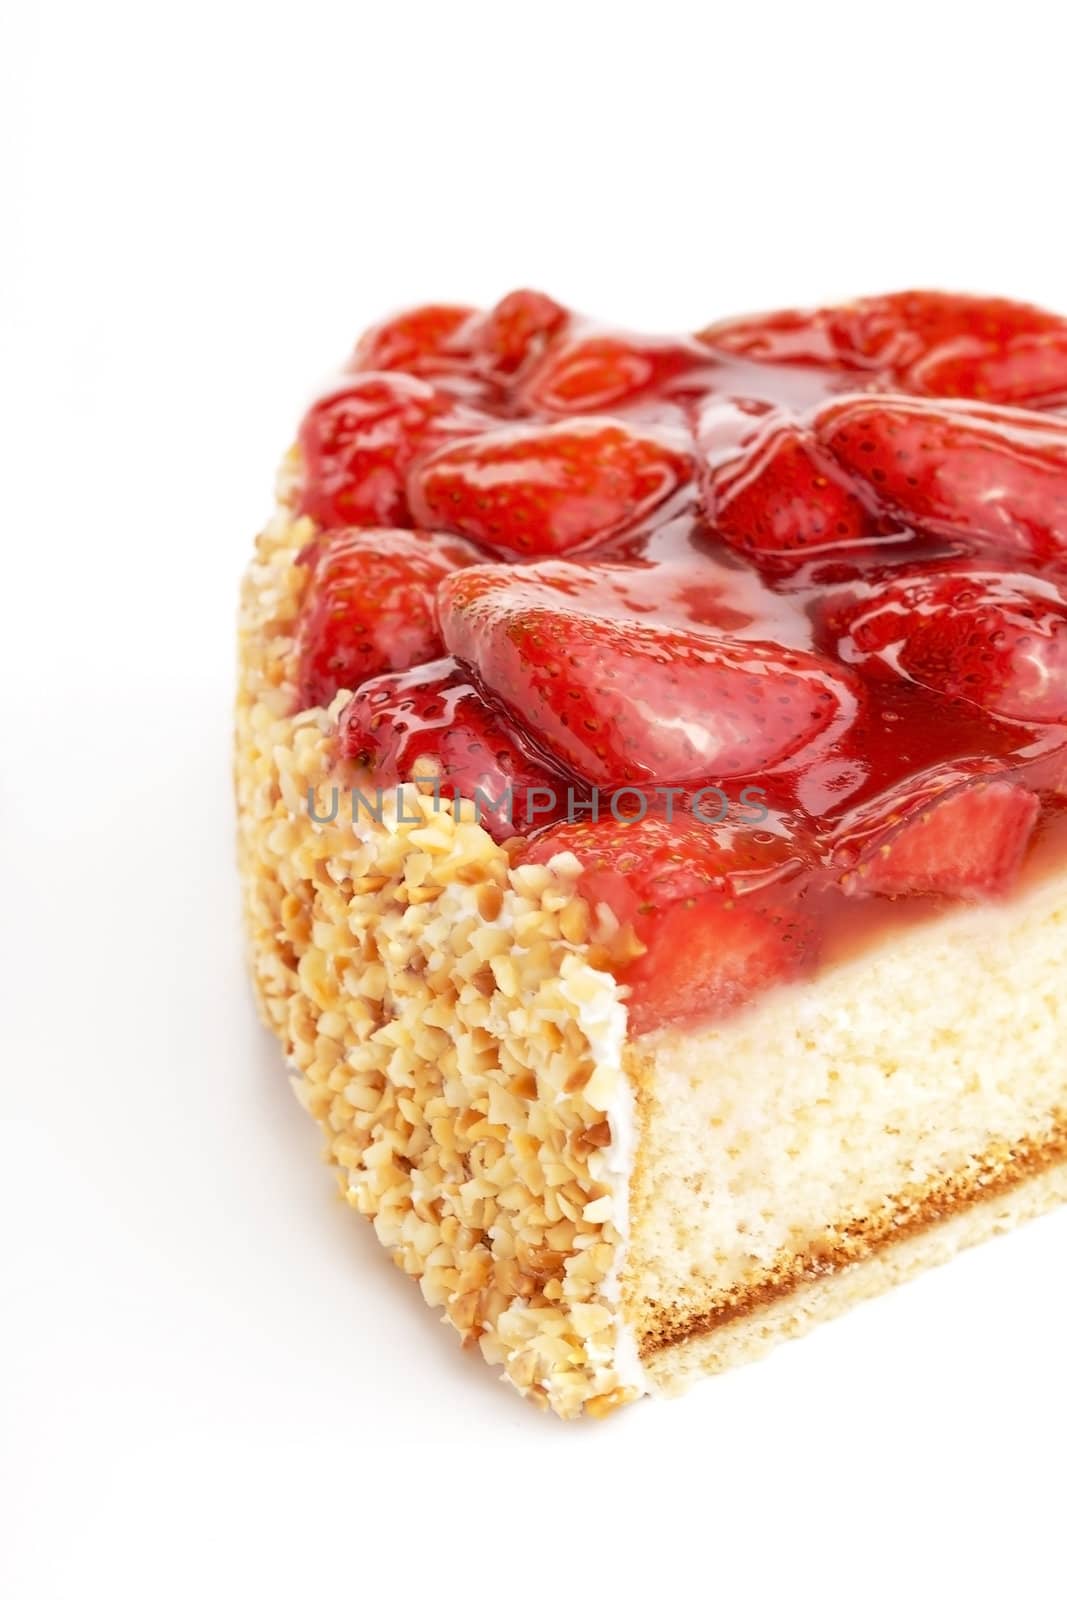 tasty strawberry cake isolated on white background